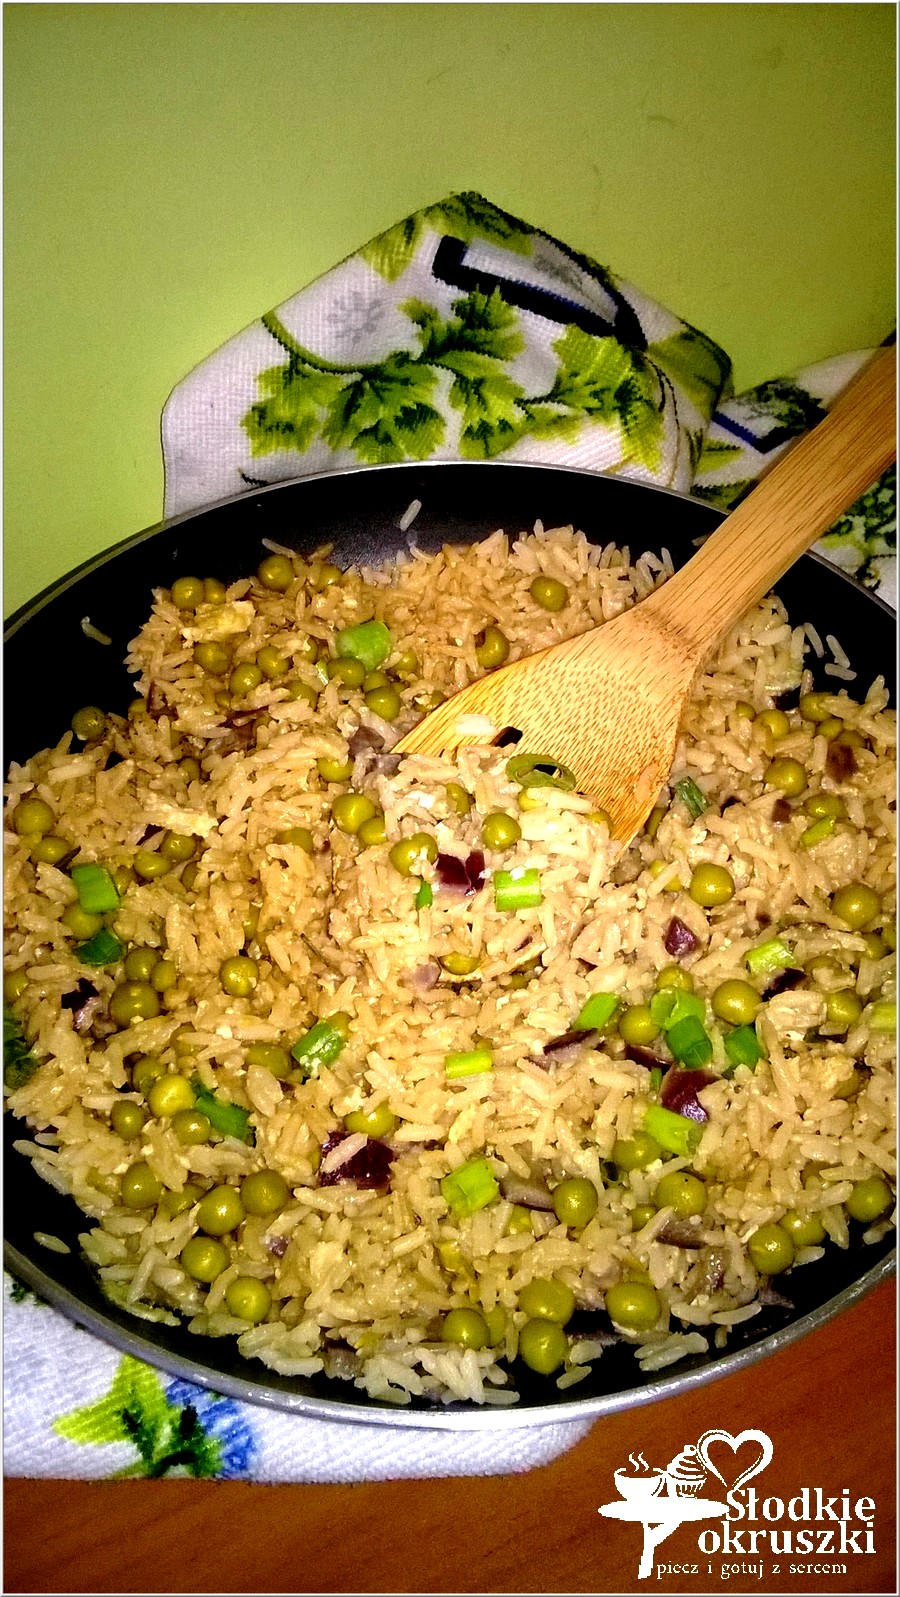 Smażony ryż z jajkiem i zielonym groszkiem (1)